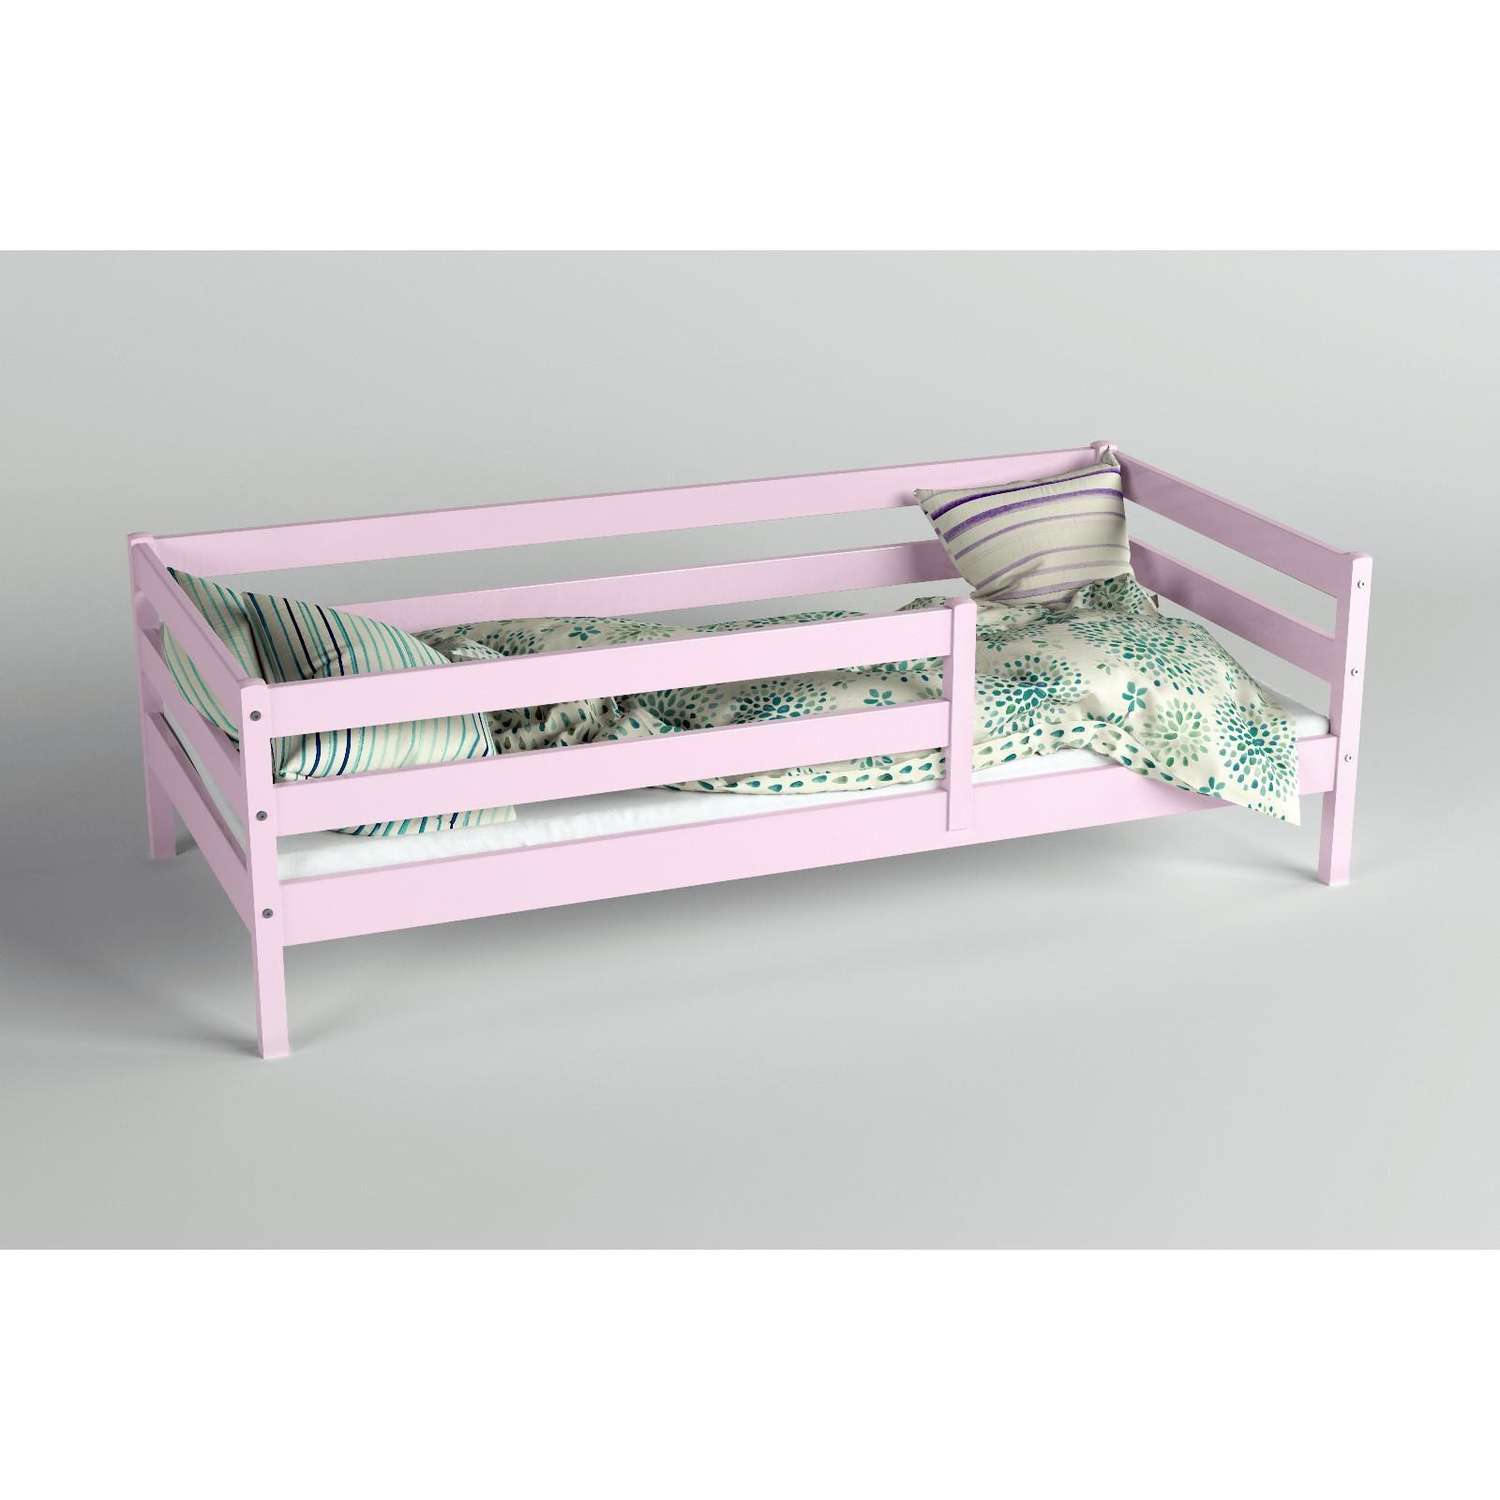 Кровать Клик Мебель Сева спальное место 1600х800 цвет Розовый пастельный Массив Берёзы - фото 2